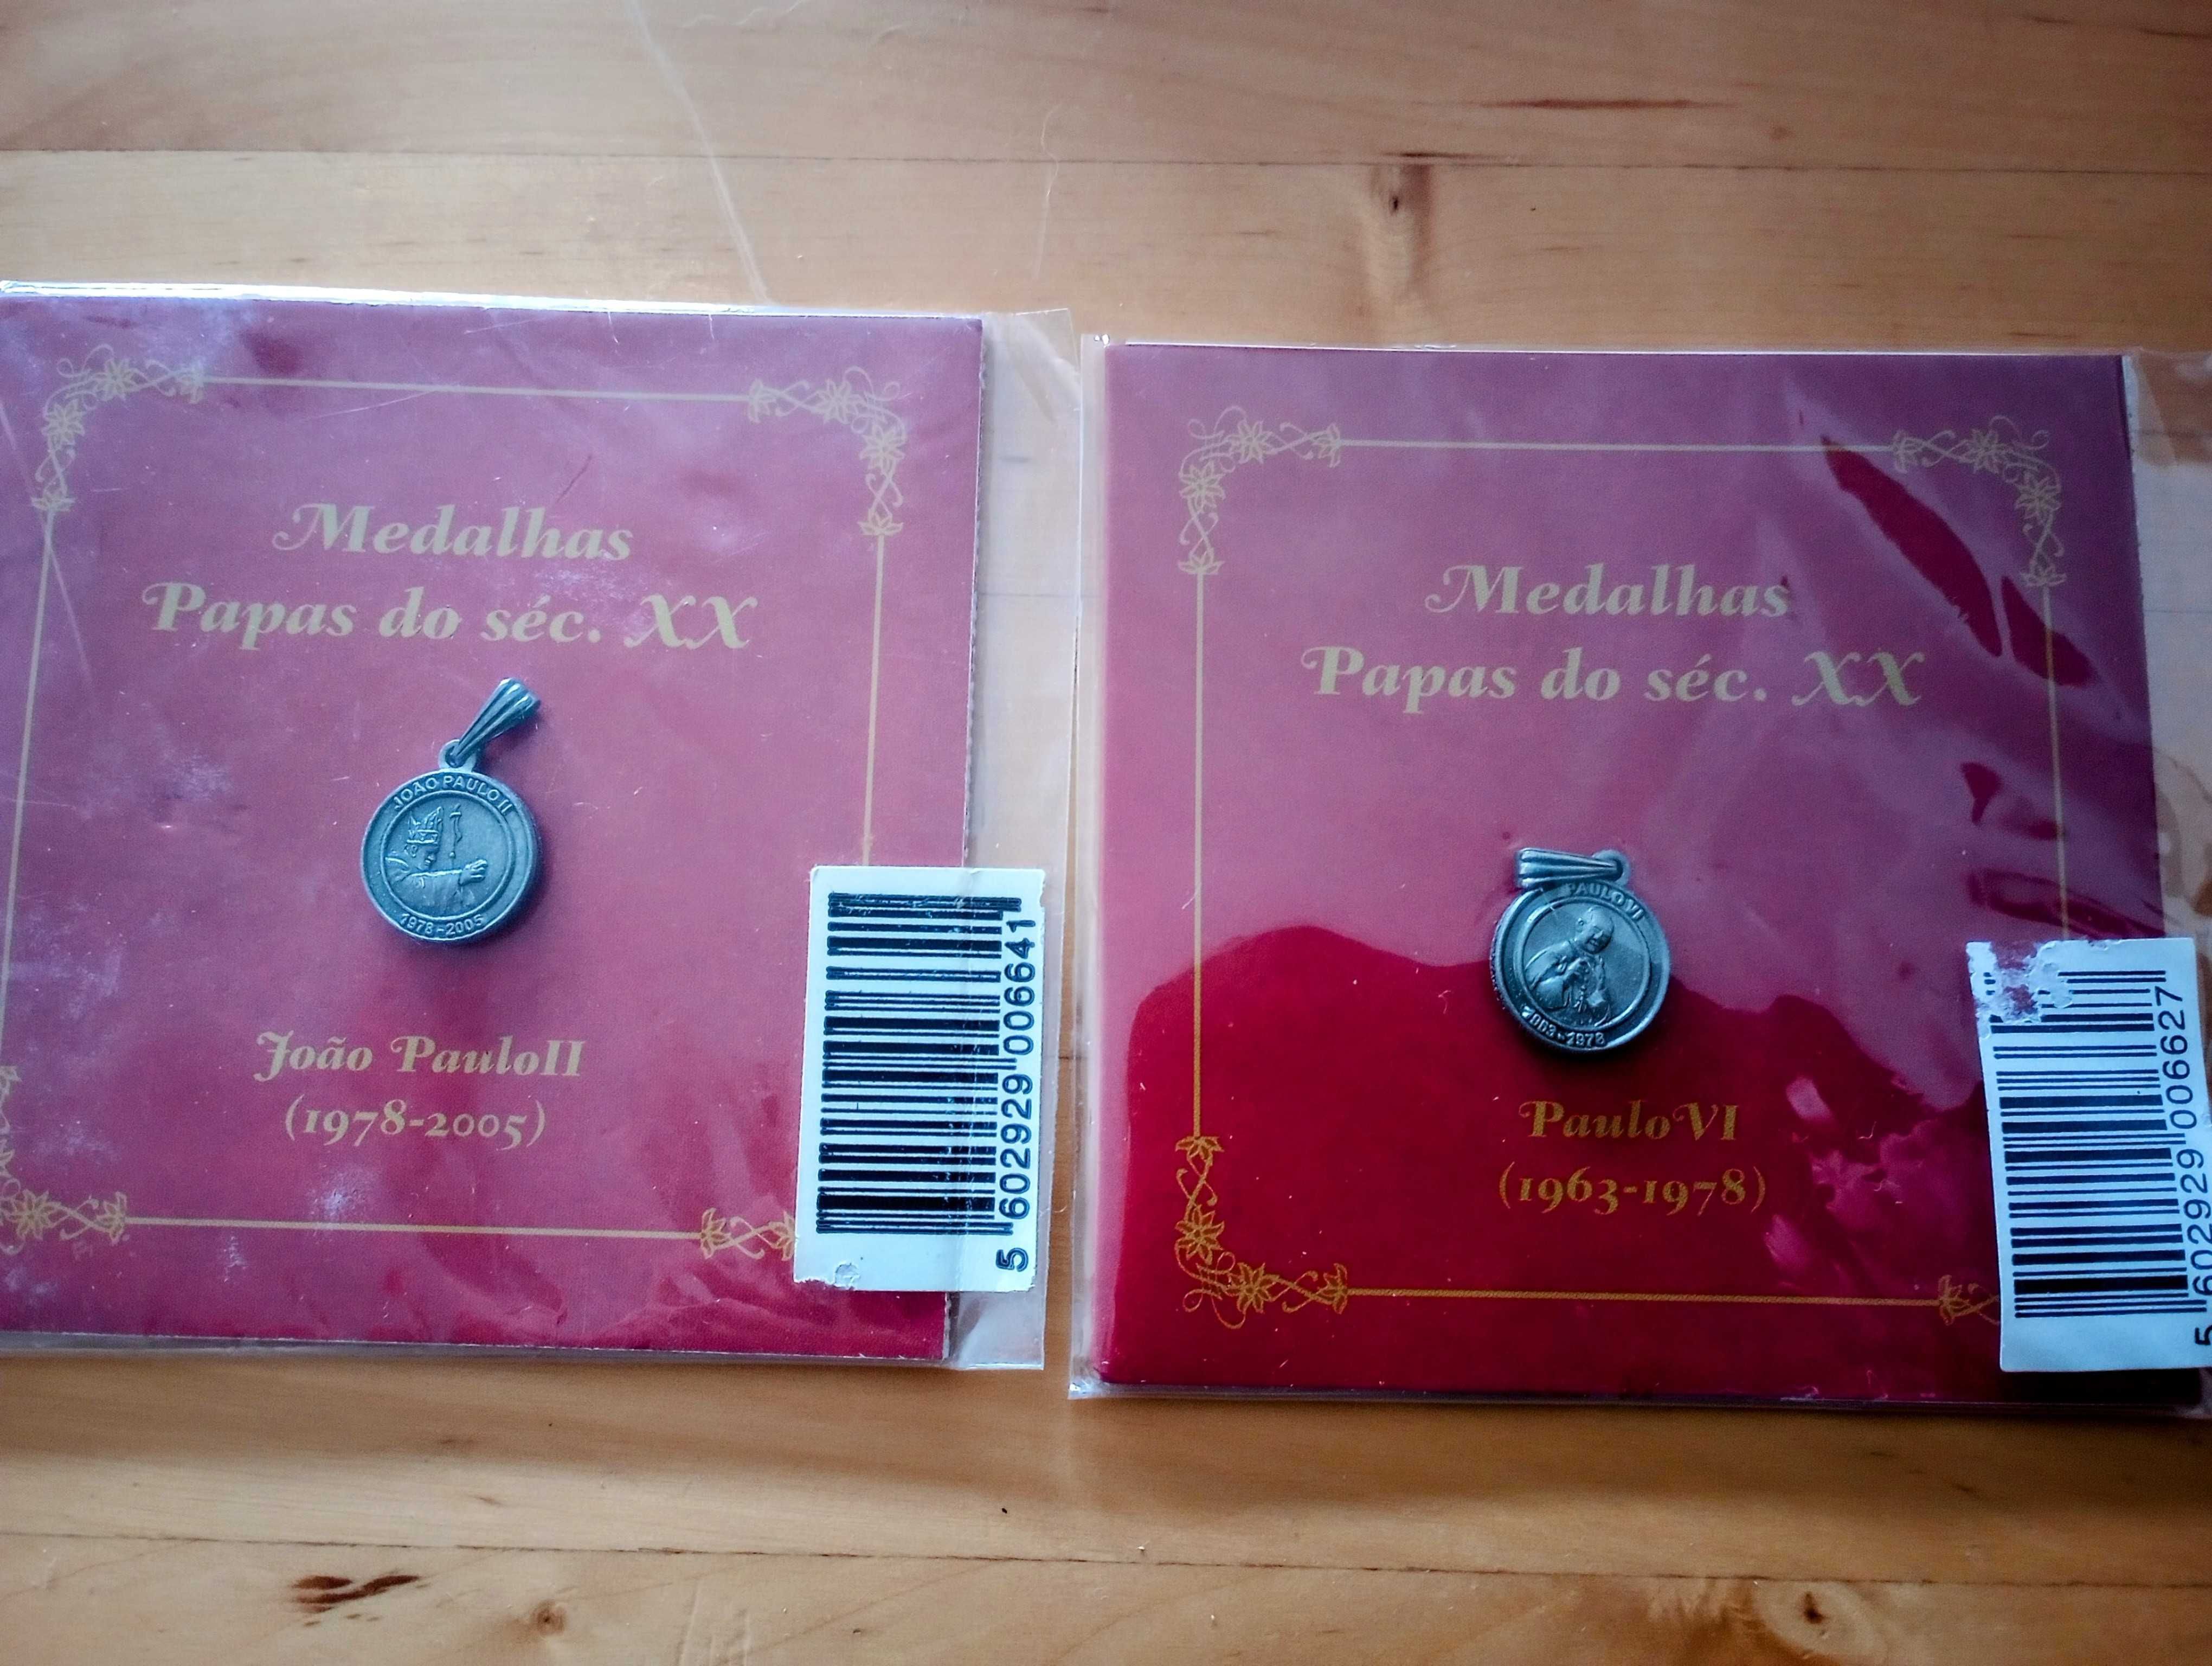 2 Medalhas da colecção Papas do seculo XX